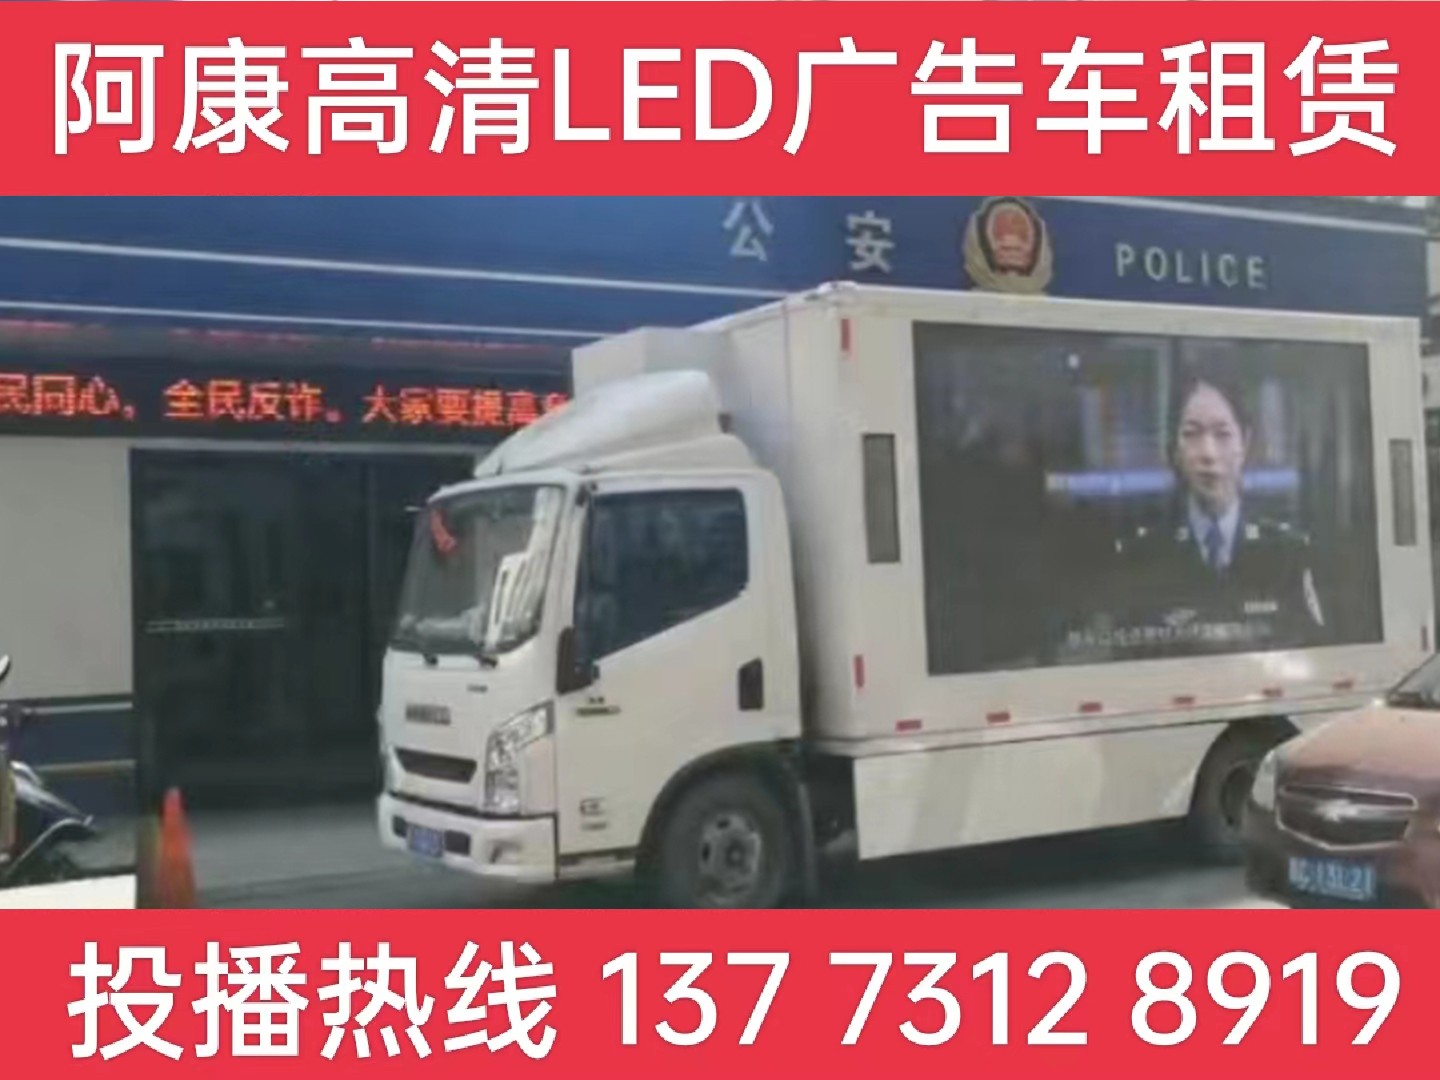 泰兴LED广告车租赁-反诈宣传